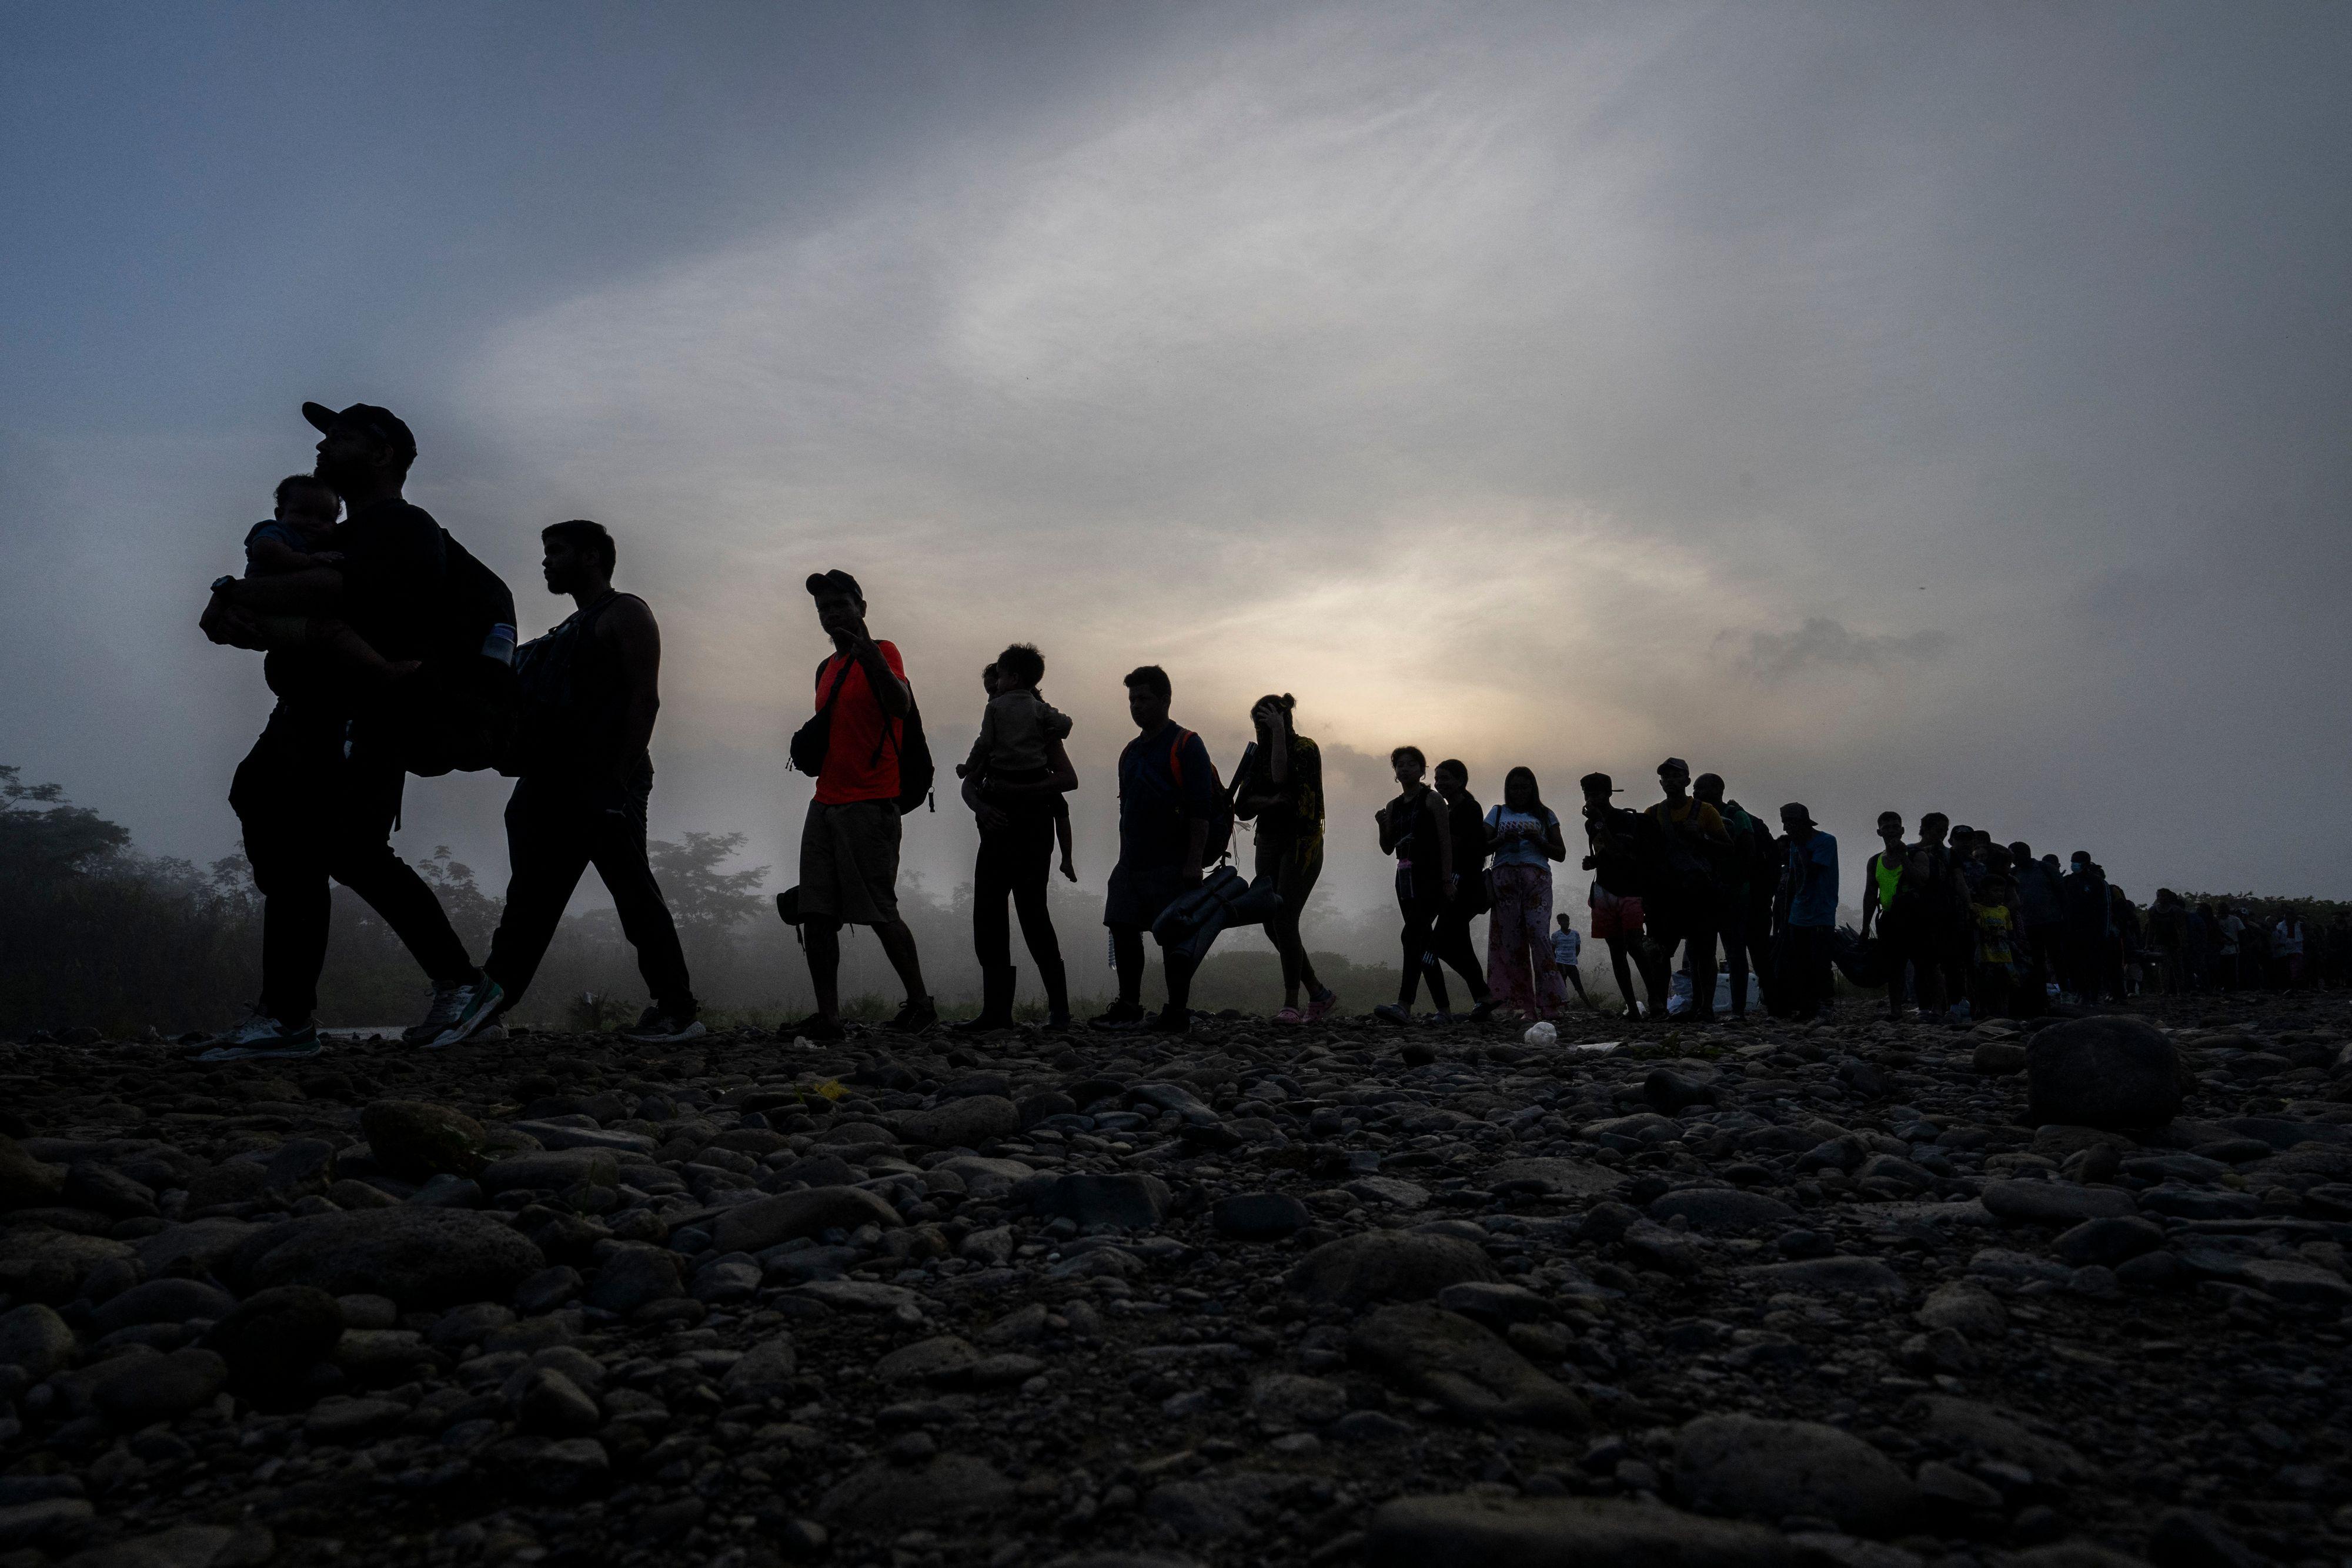 Las organizaciones que transportan migrantes clandestinos en el Darién inquietan a EE.UU. AFP